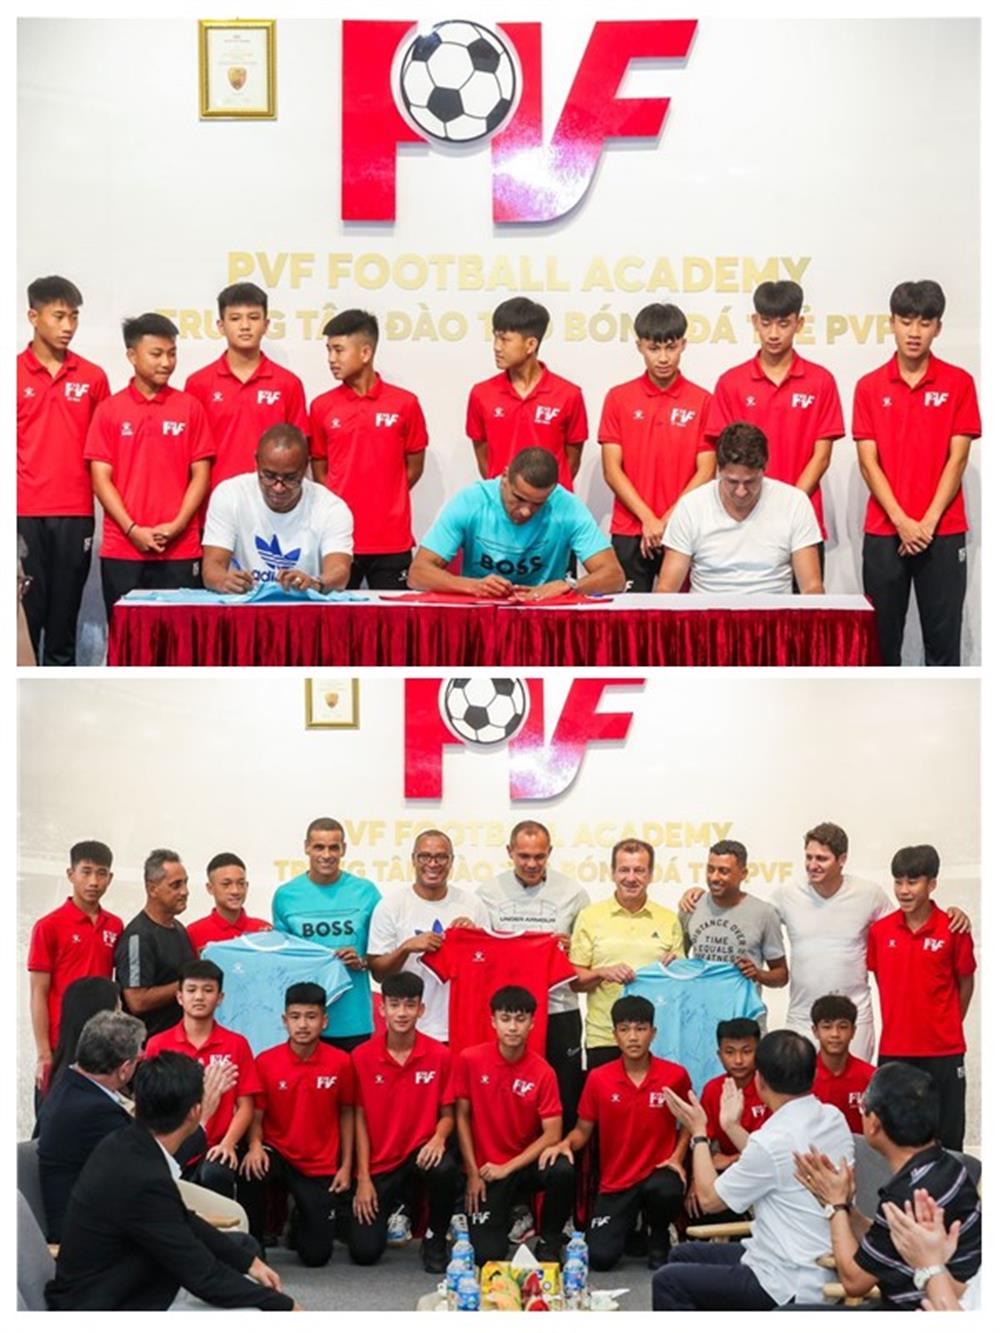 Trong khuôn khổ chuyến thăm, HLV Dunga và các cựu danh thủ Brazil đã ký tặng áo và giao lưu với các cầu thủ trẻ đang học tập tại Trung tâm đào tạo bóng đá trẻ Việt Nam-PVF, cũng như Câu lạc bộ bóng đá PVF-CAND.